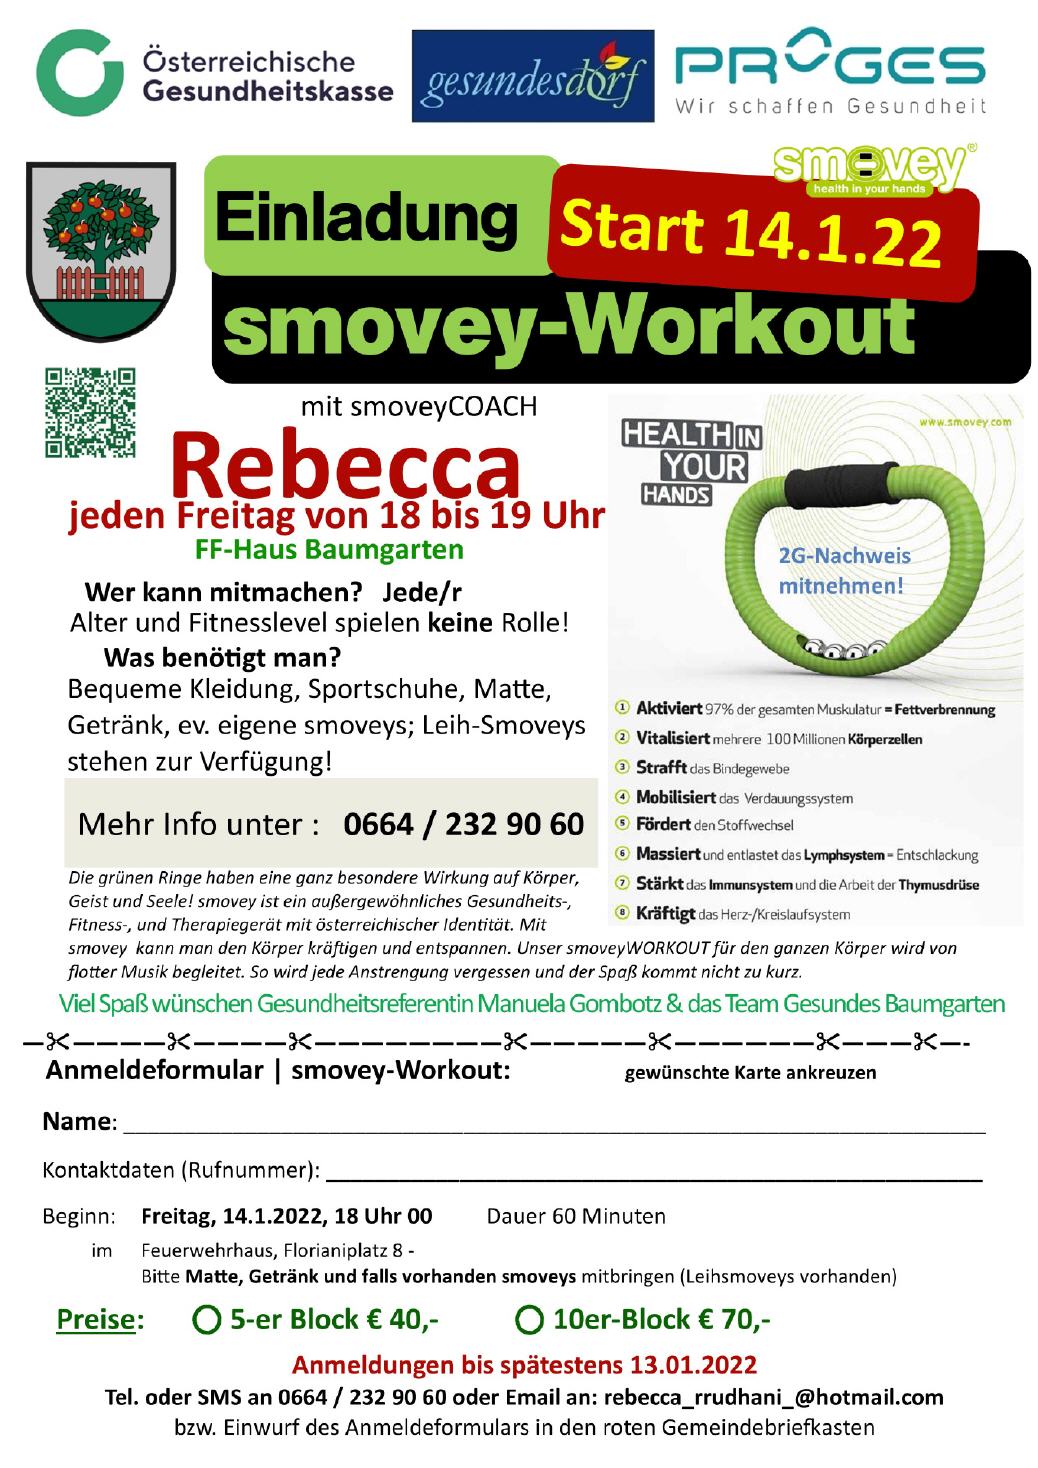 Smovey-Workout ab Jänner 2022